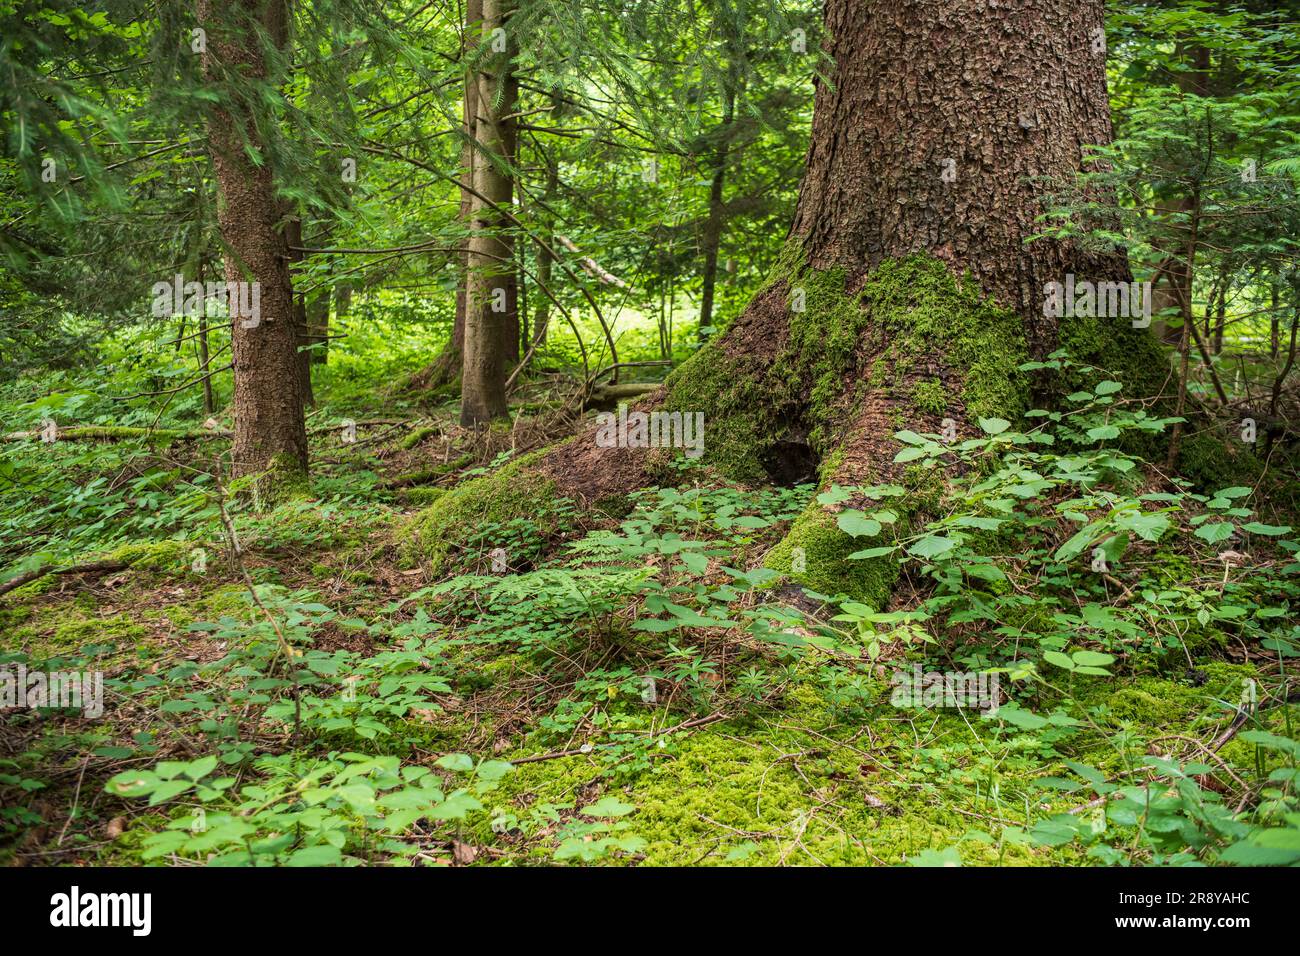 Grande quercia con radici mosche in una foresta europea. Nuvoloso giorno estivo, lussureggiante vegetazione verde, niente persone. Foto Stock